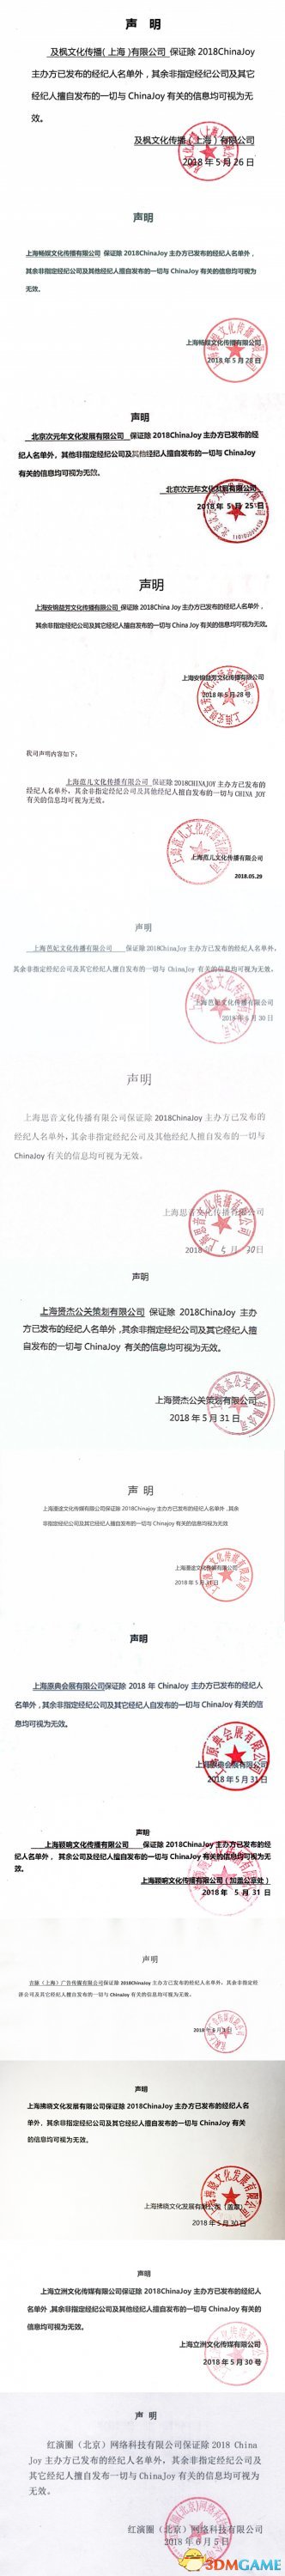 2018ChinaJoy指定經紀公司—經紀人名單公布